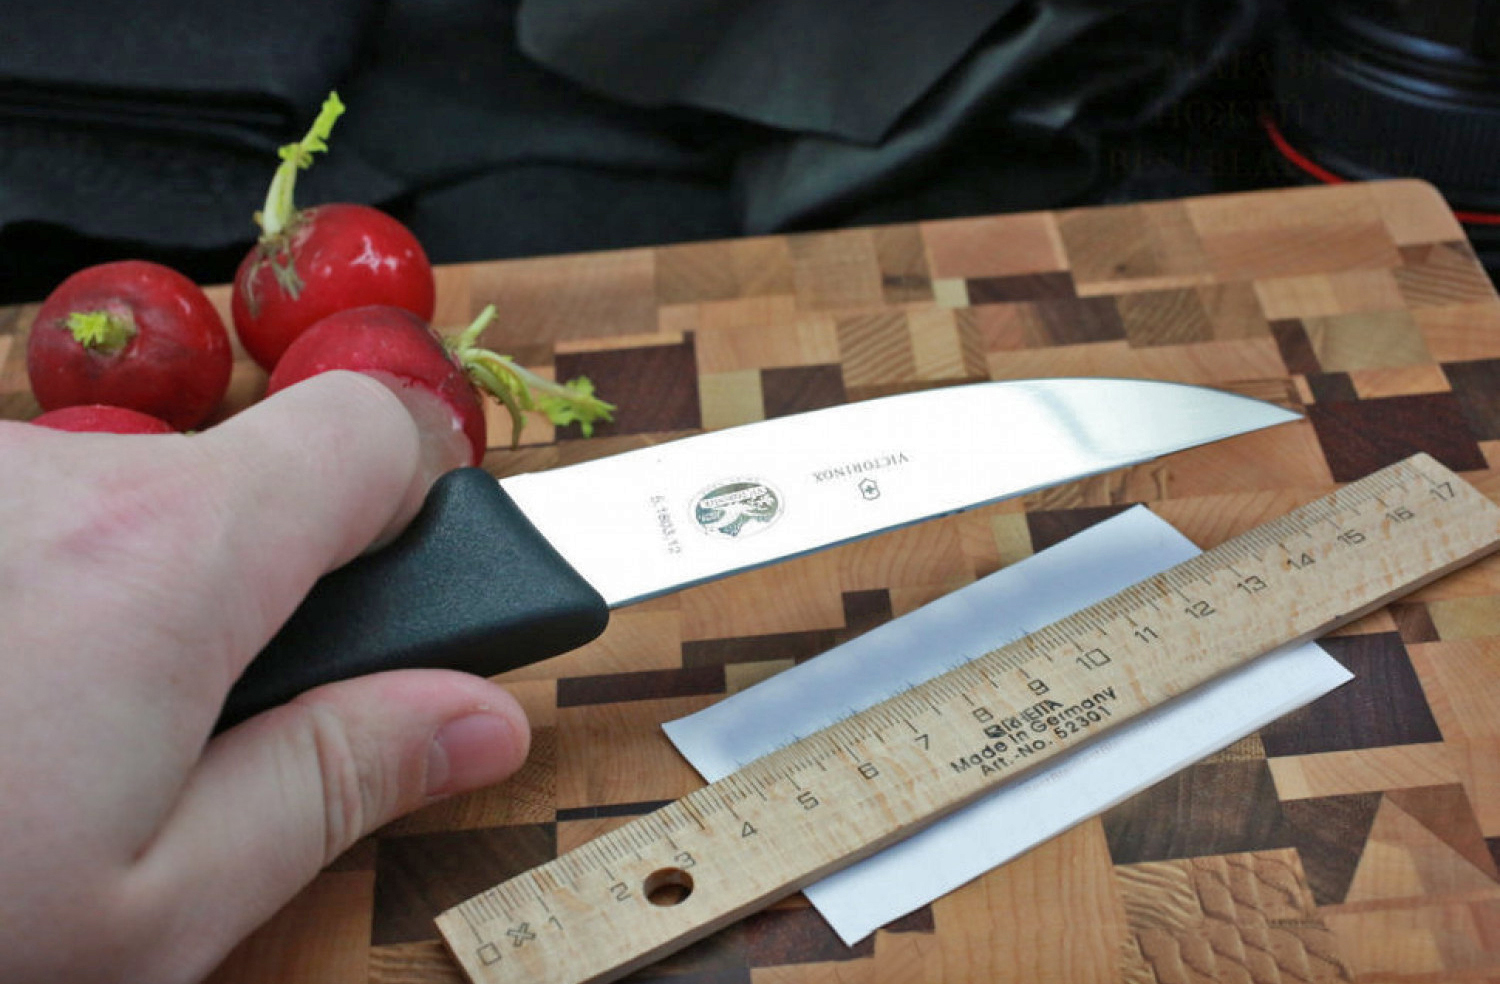 Кухонный нож Victorinox, сталь X50 Cr Mo V 15, рукоять полипропилен, черный от Ножиков